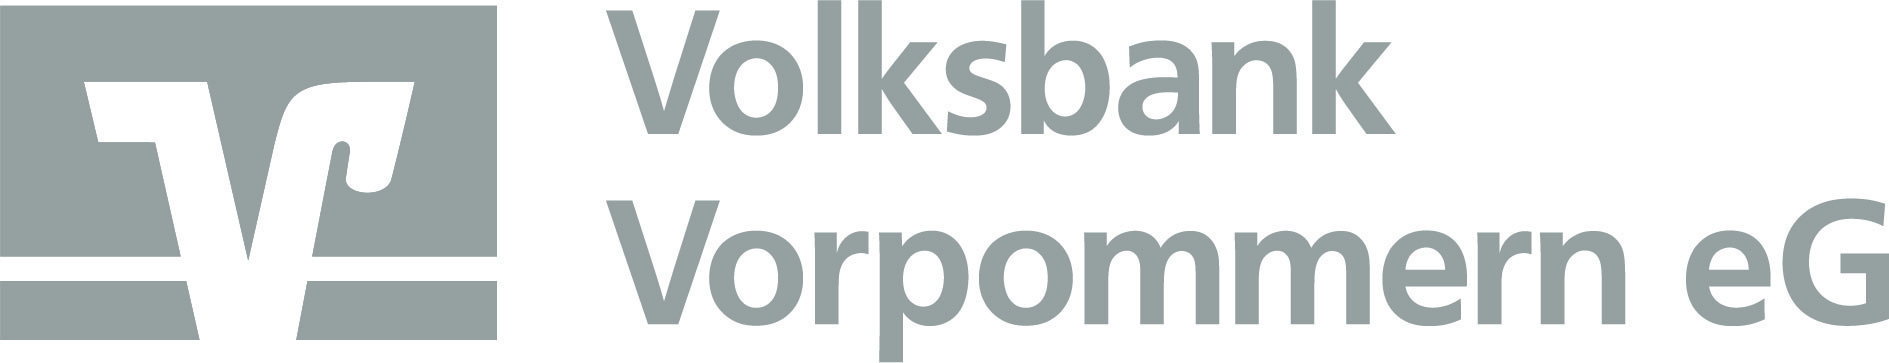 logo_Sponsor2022_VolksbankVorpommern.jpg